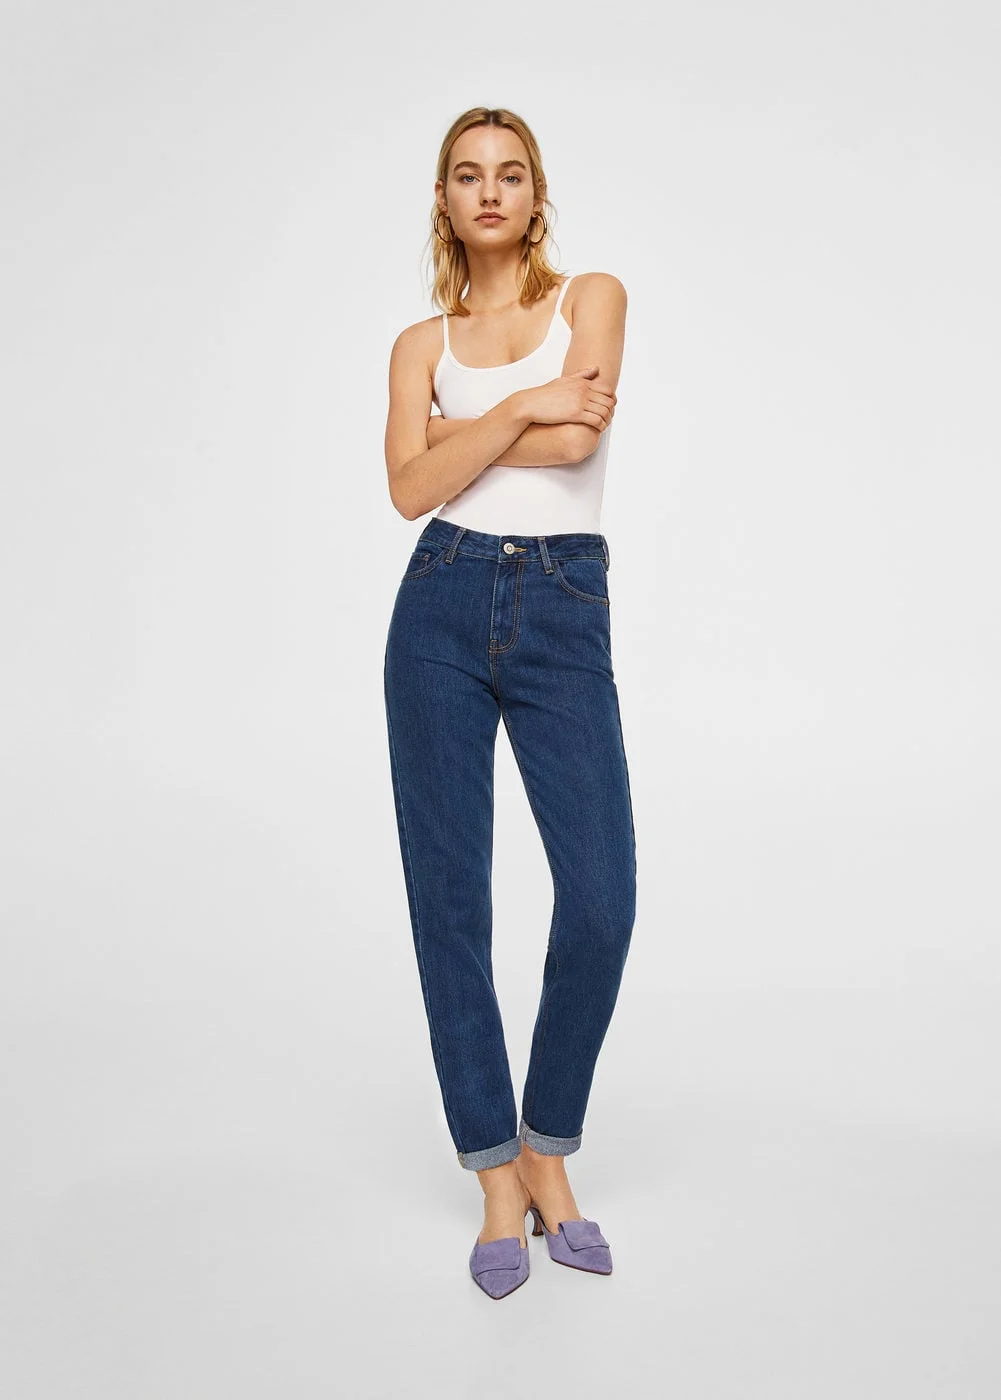 Ці джинси стануть головним хітом сезону і мають бути в кожної дівчини - фото 371565